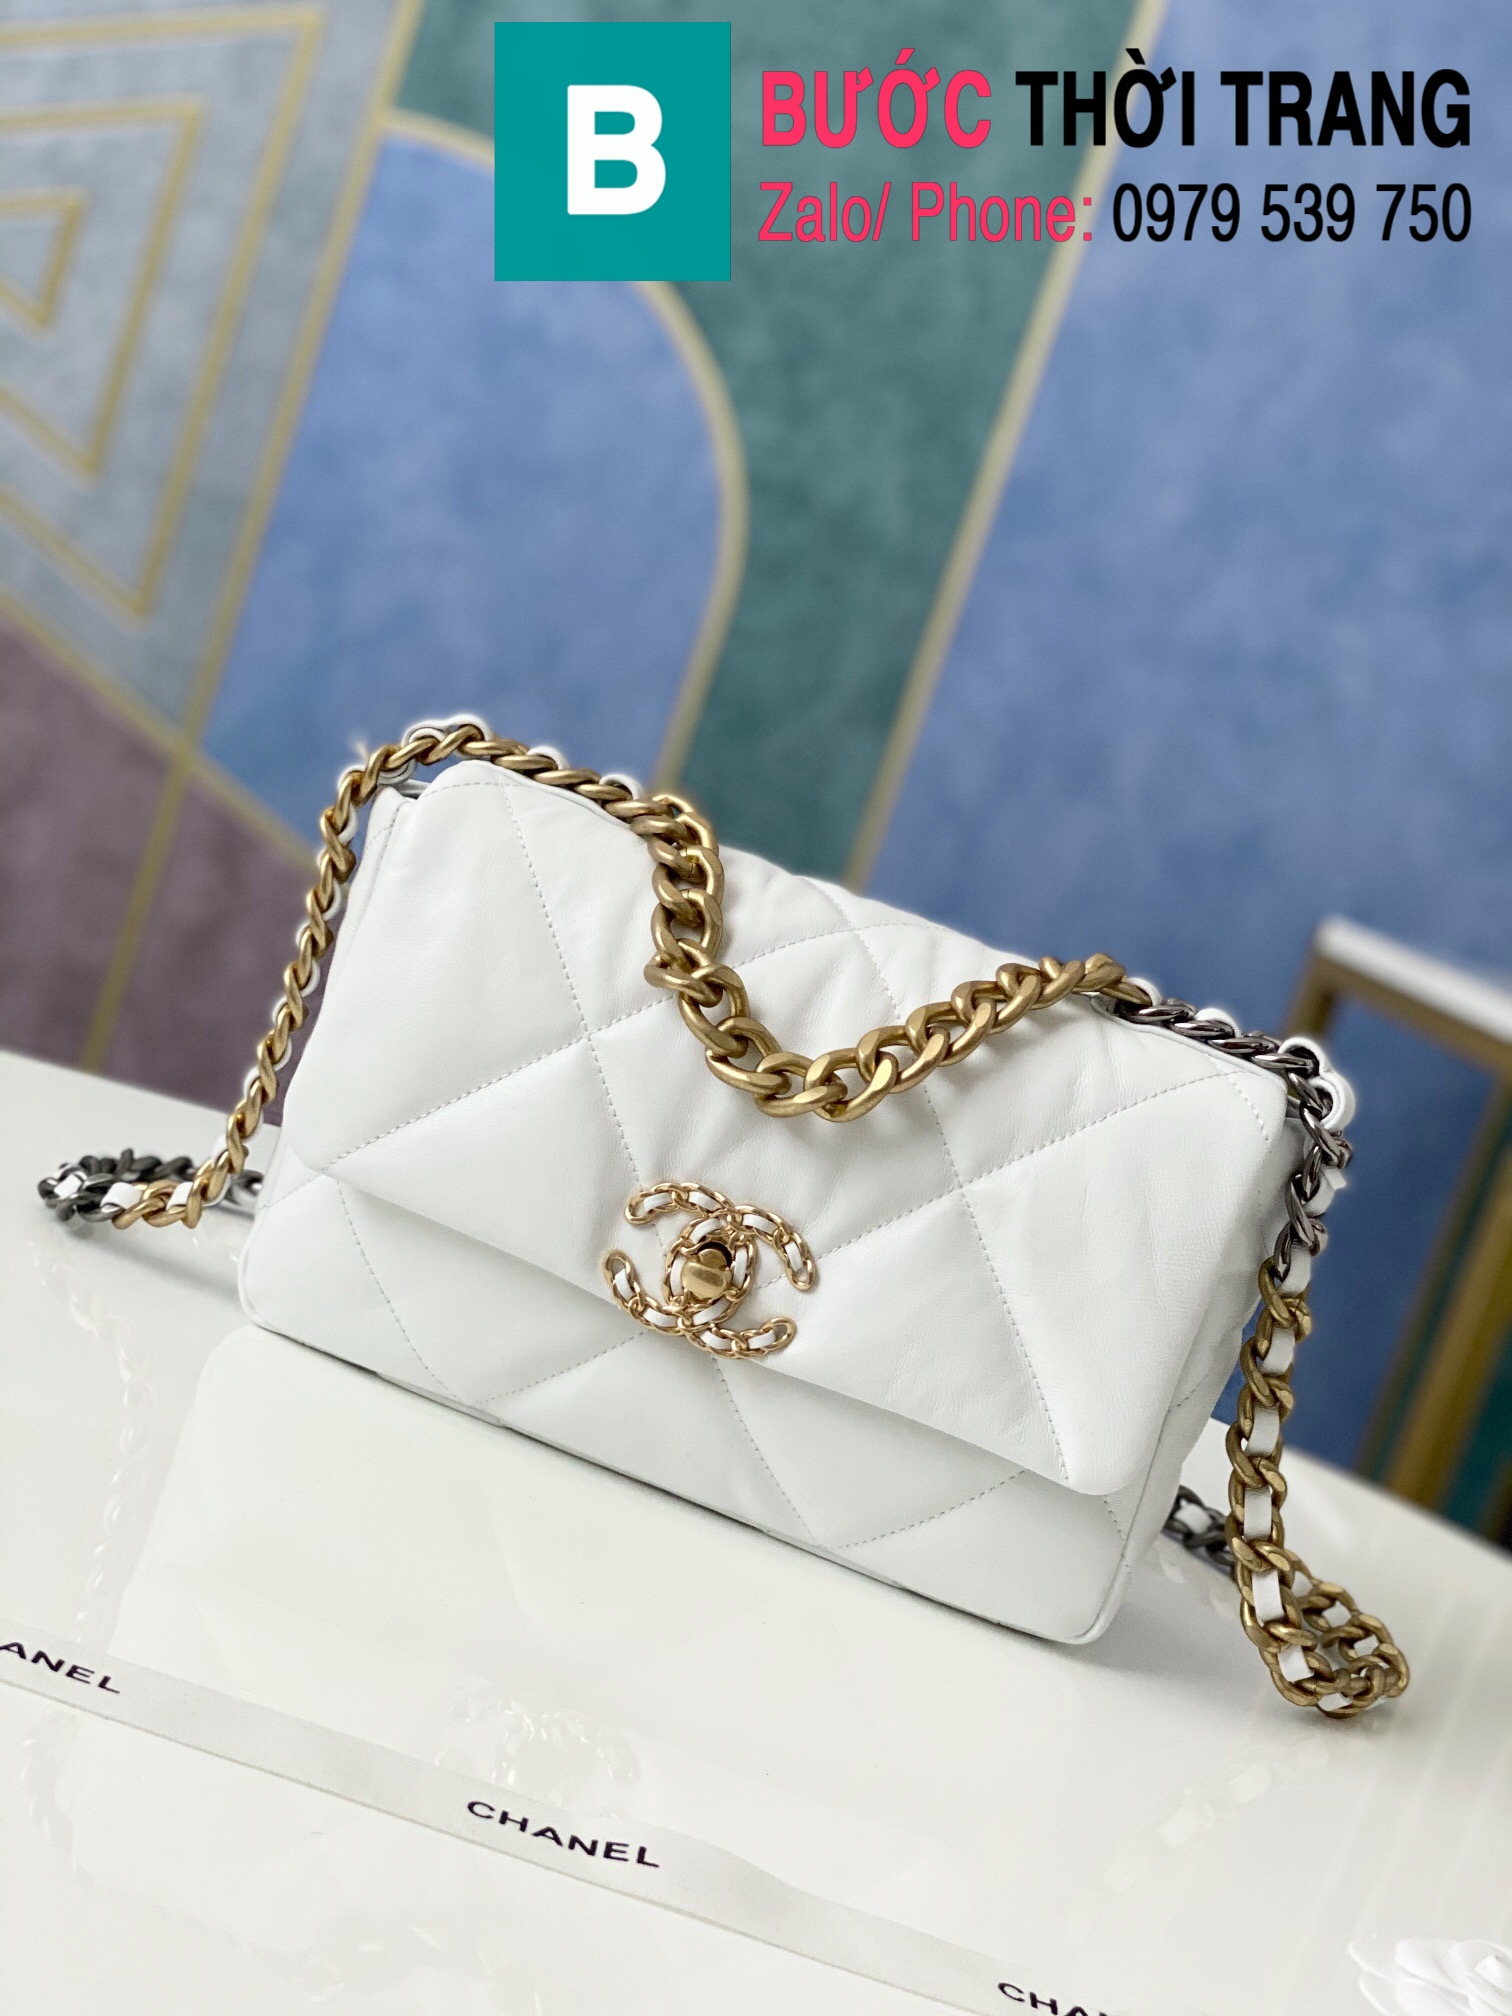 Túi xách Chanel 19 flap bag siêu cấp da bê màu trắng size 26 cm – 1160 –  Túi Xách Nữ, Túi Xách Đẹp, Túi Xách Giày Dép Nữ – Bước Thời Trang